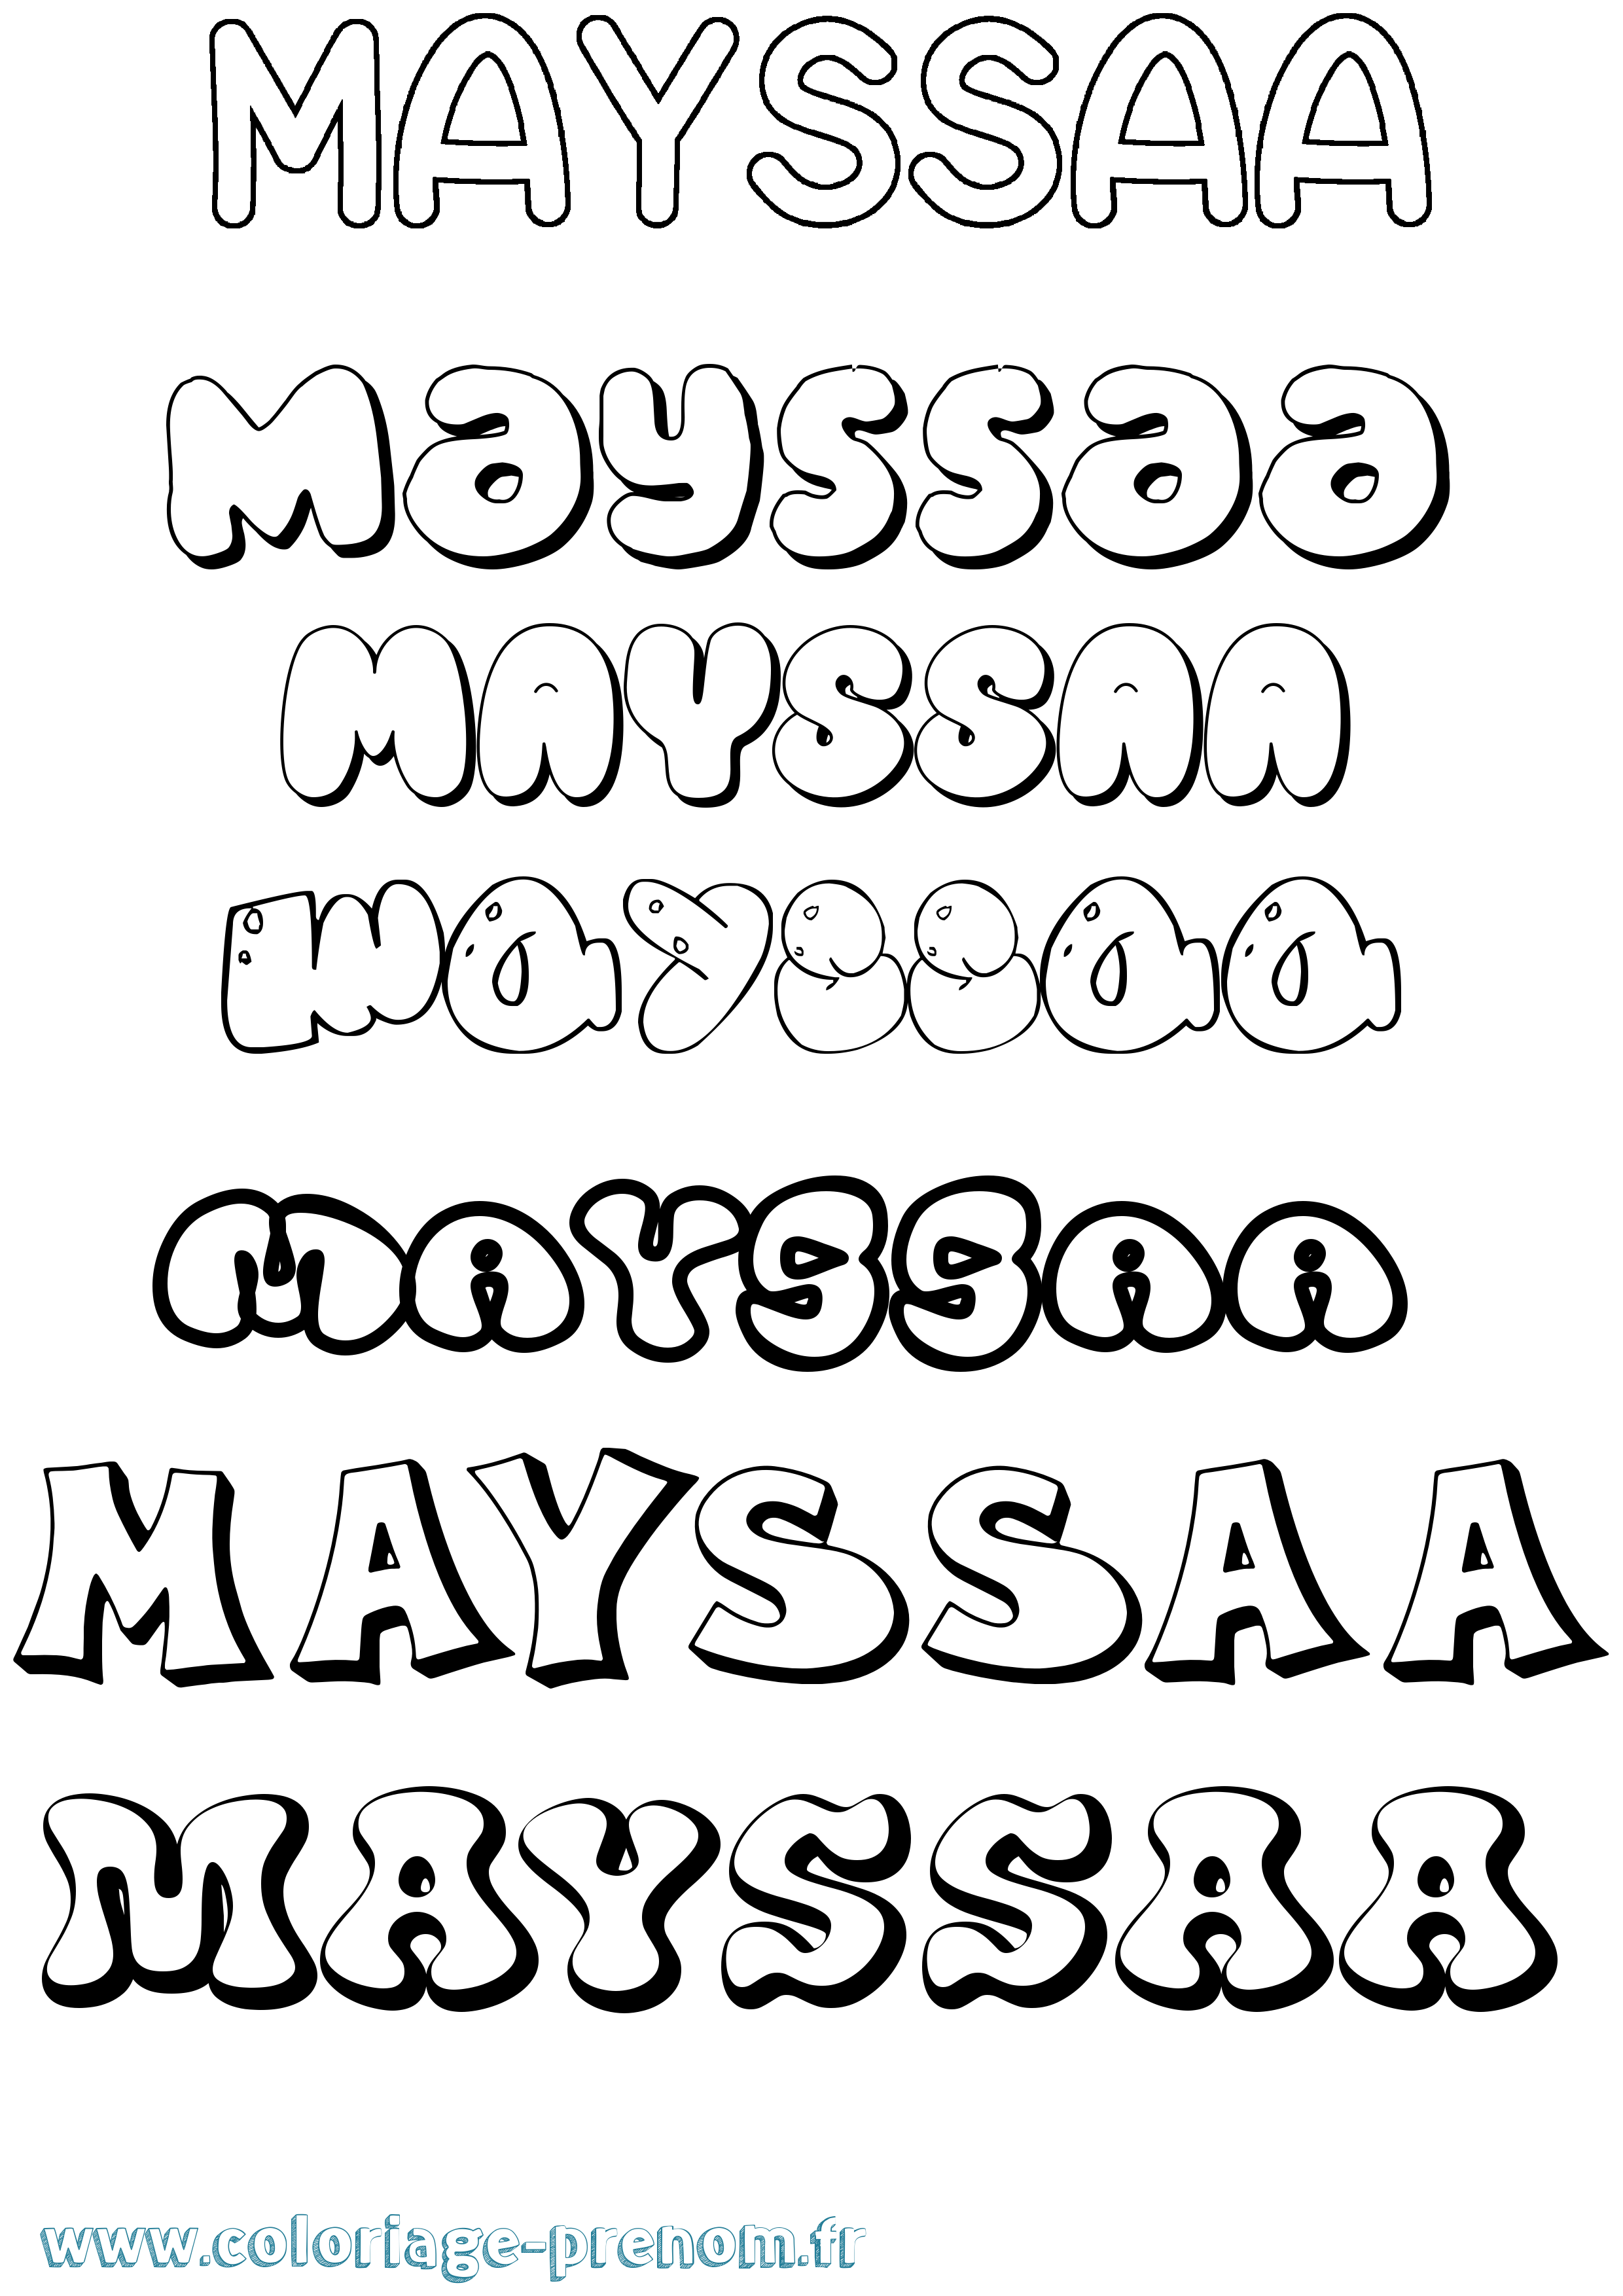 Coloriage prénom Mayssaa Bubble